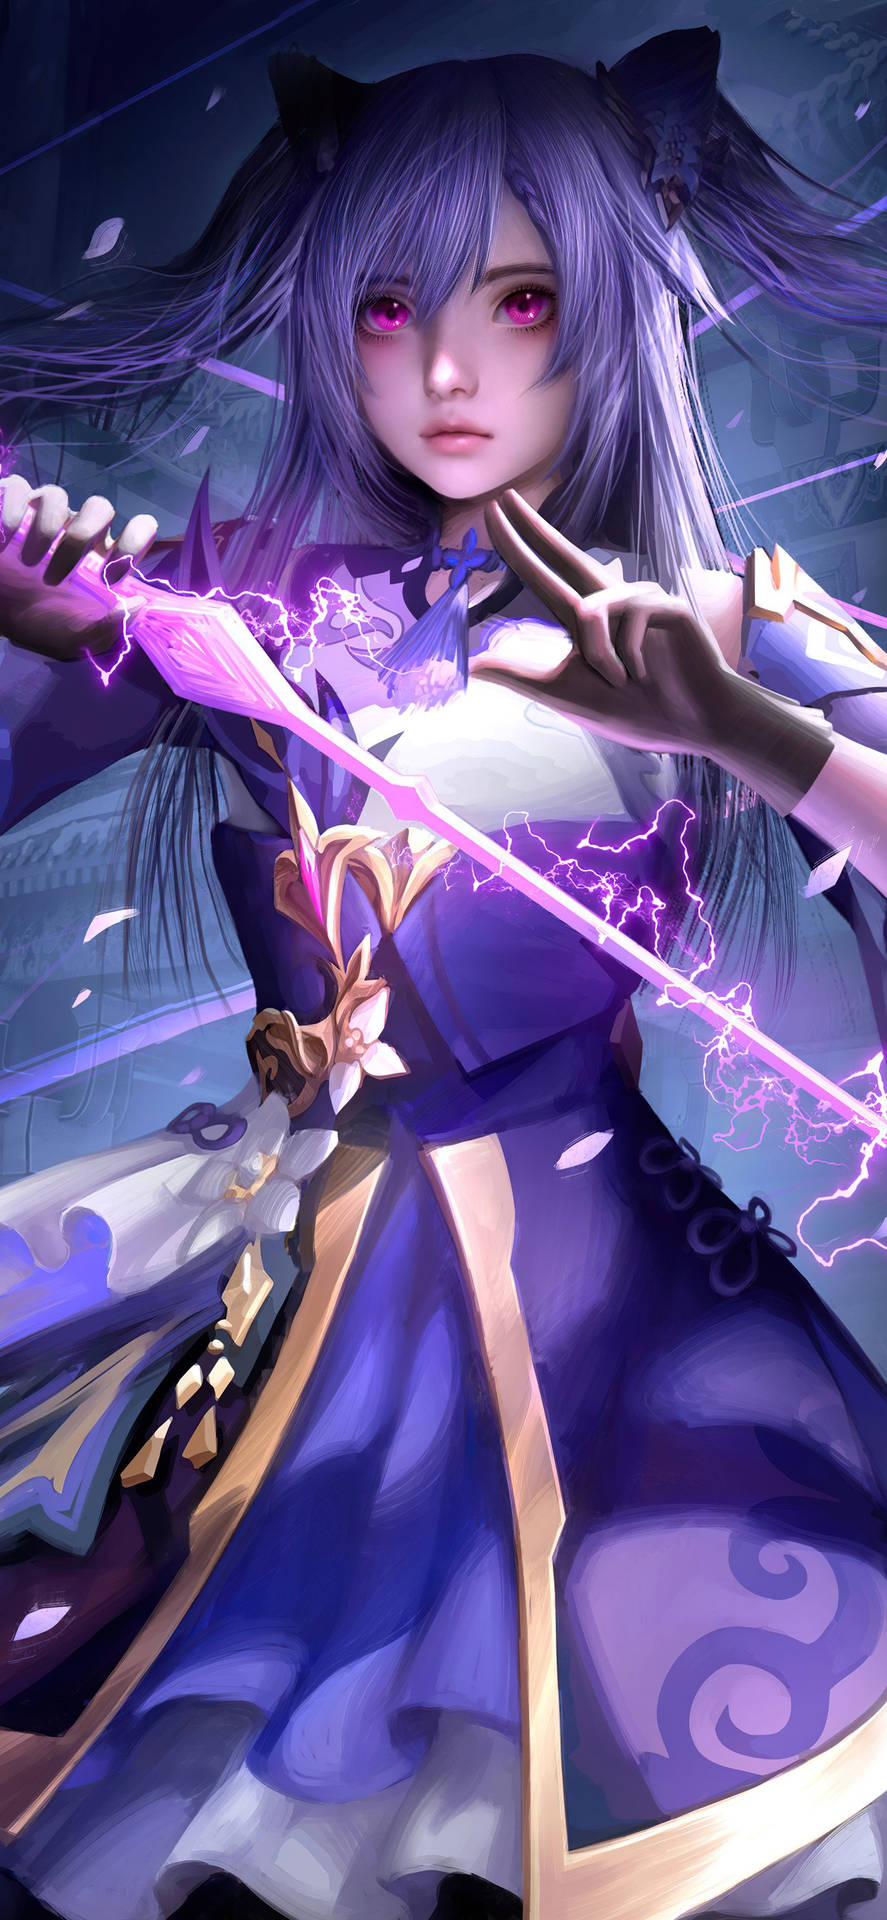 Keqing,die Heldin Von Genshin Impact. Wallpaper